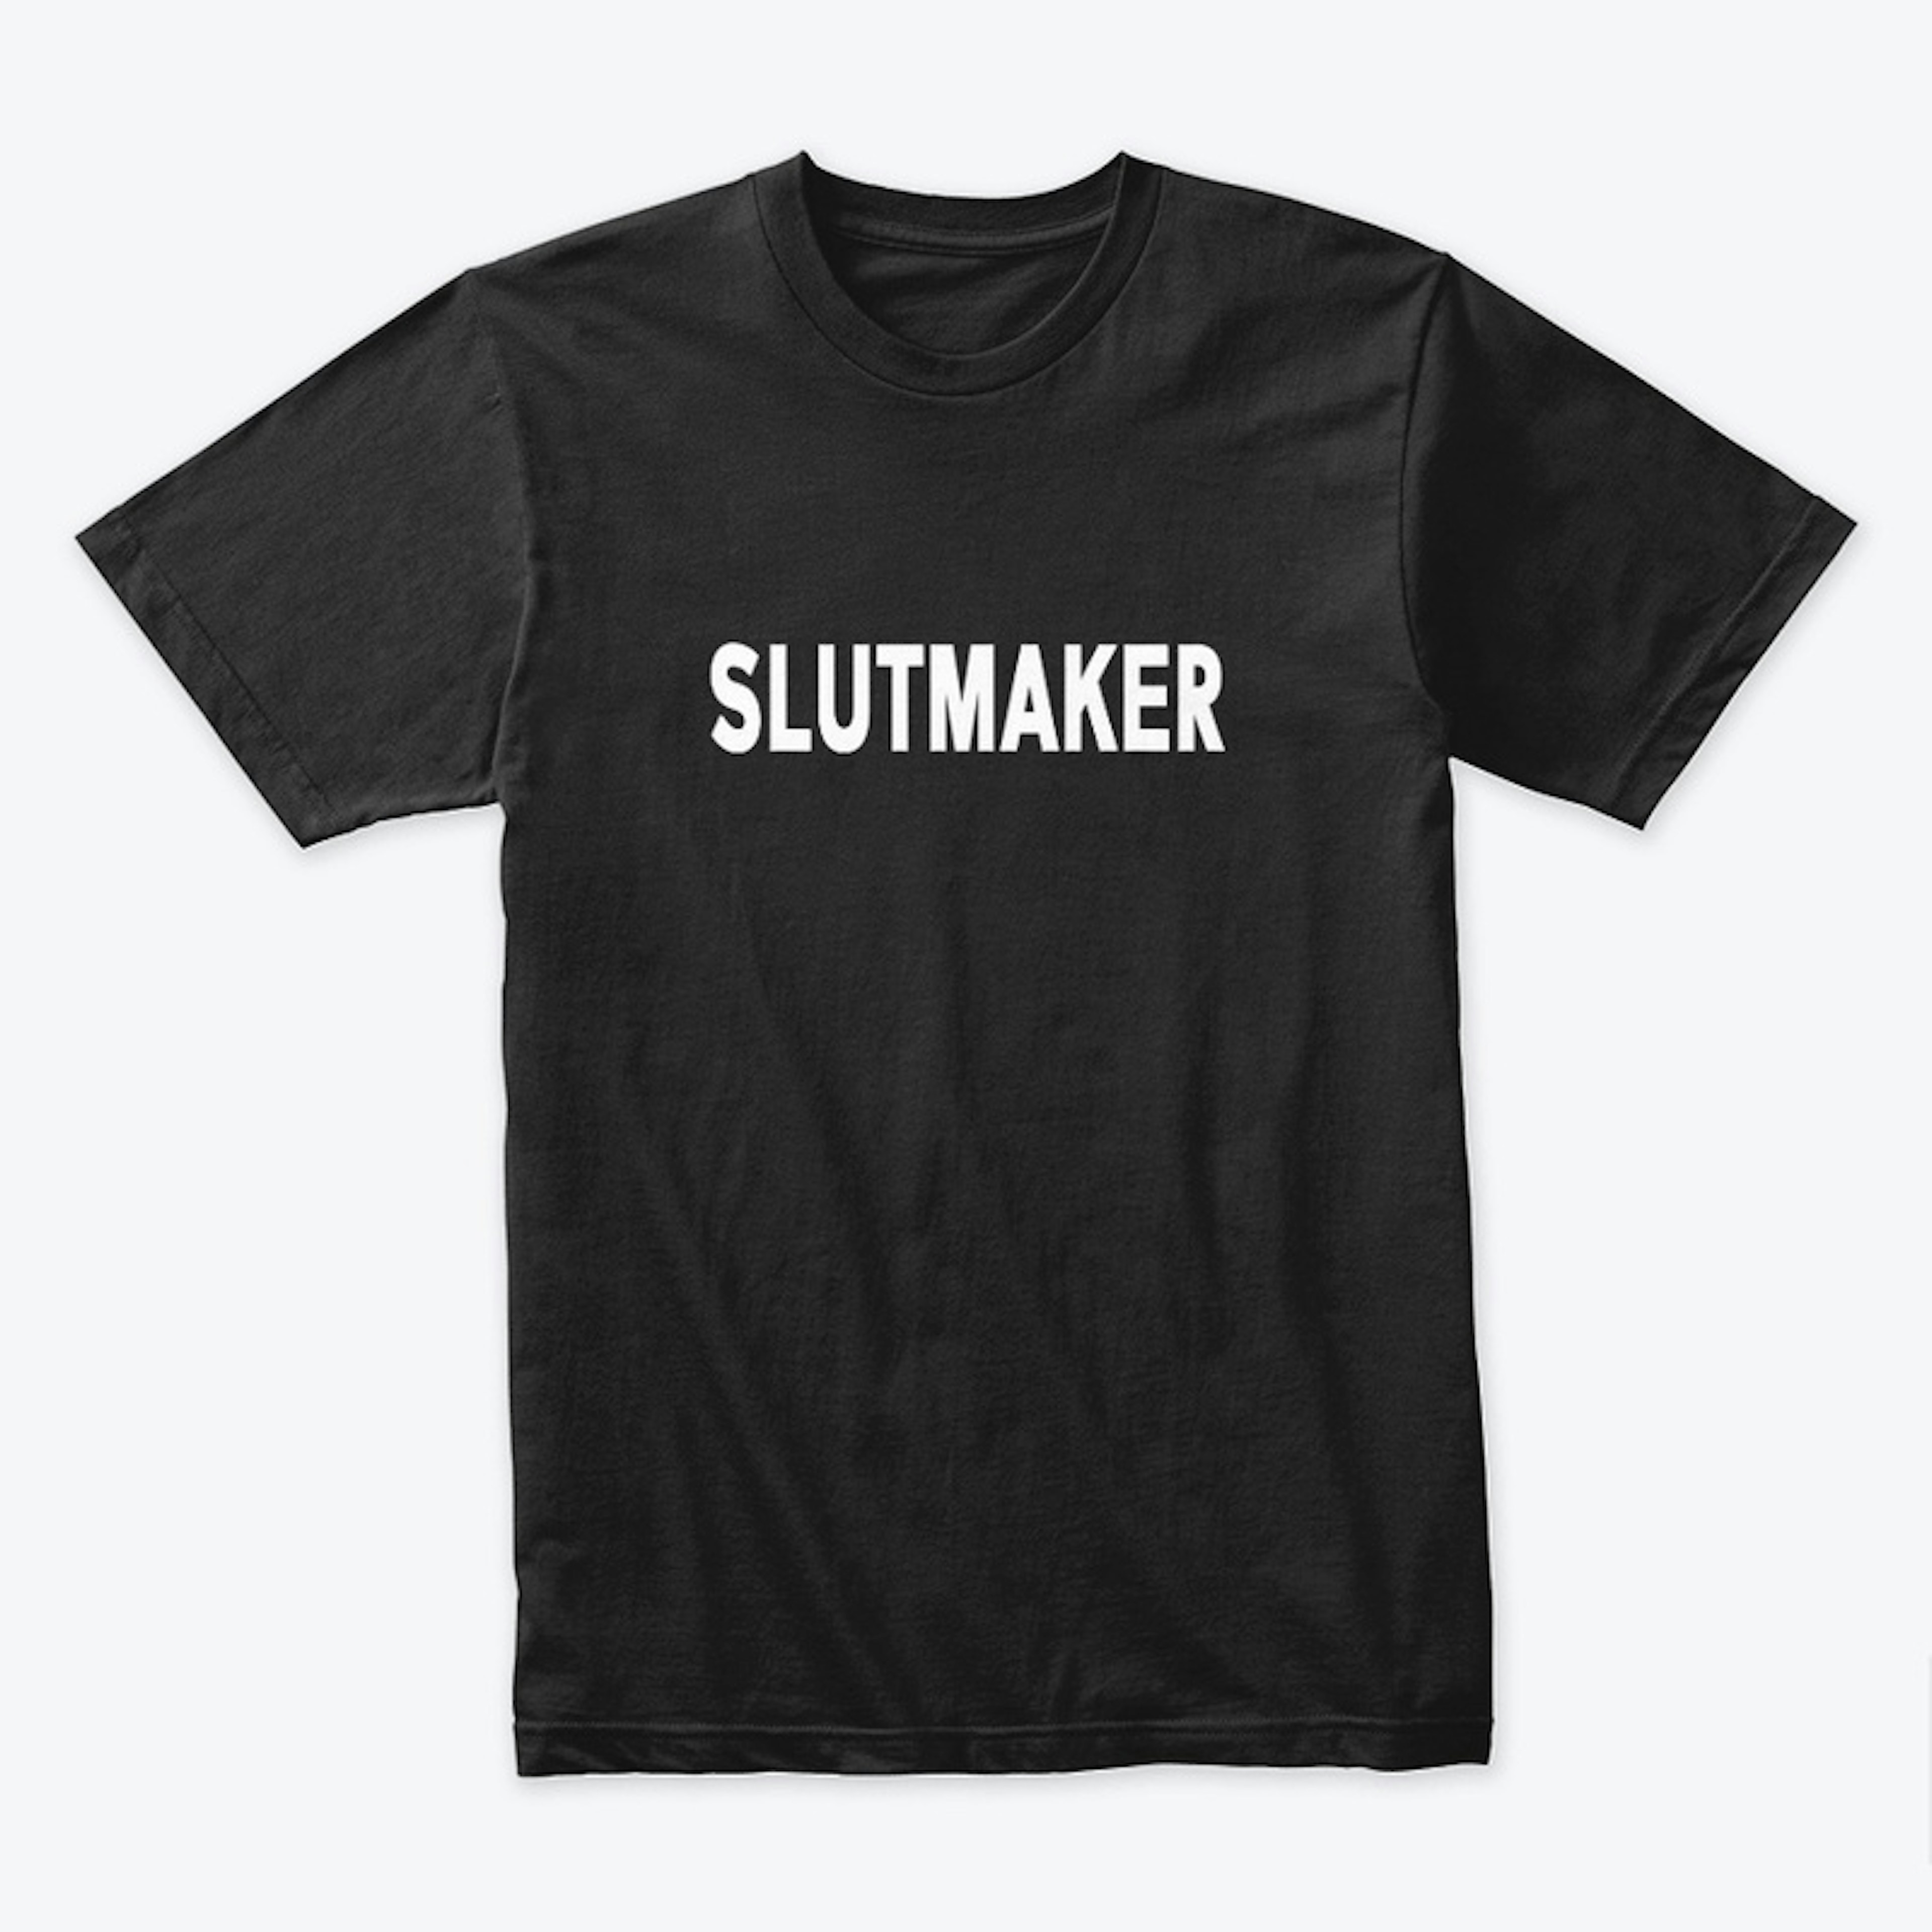 SL*TMAKER Fallen State T-Shirt